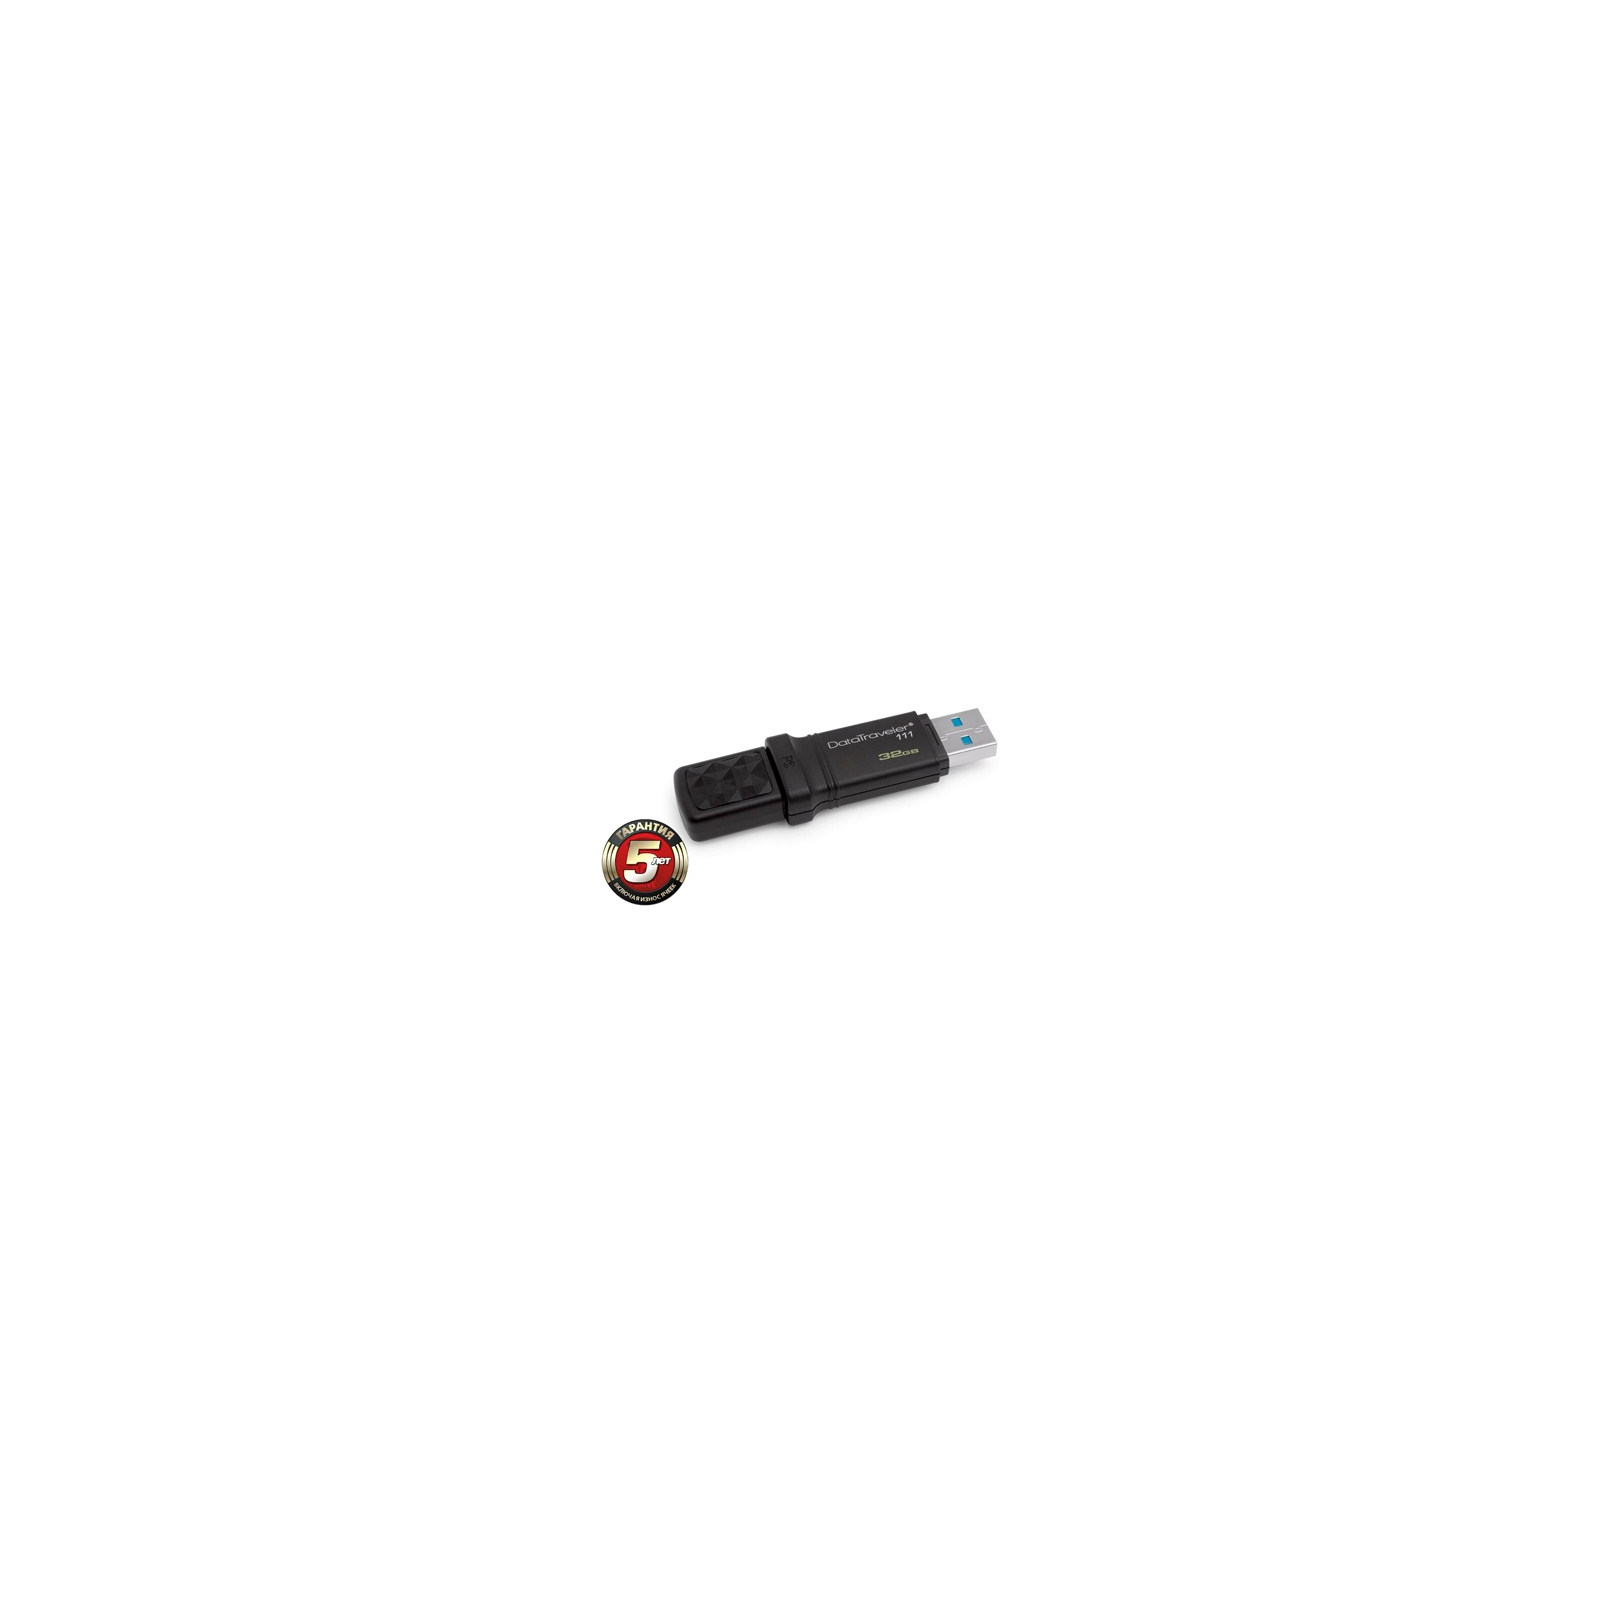 USB флеш накопичувач Kingston 32Gb DataTraveler DT111 Black (DT111/32GB) зображення 2